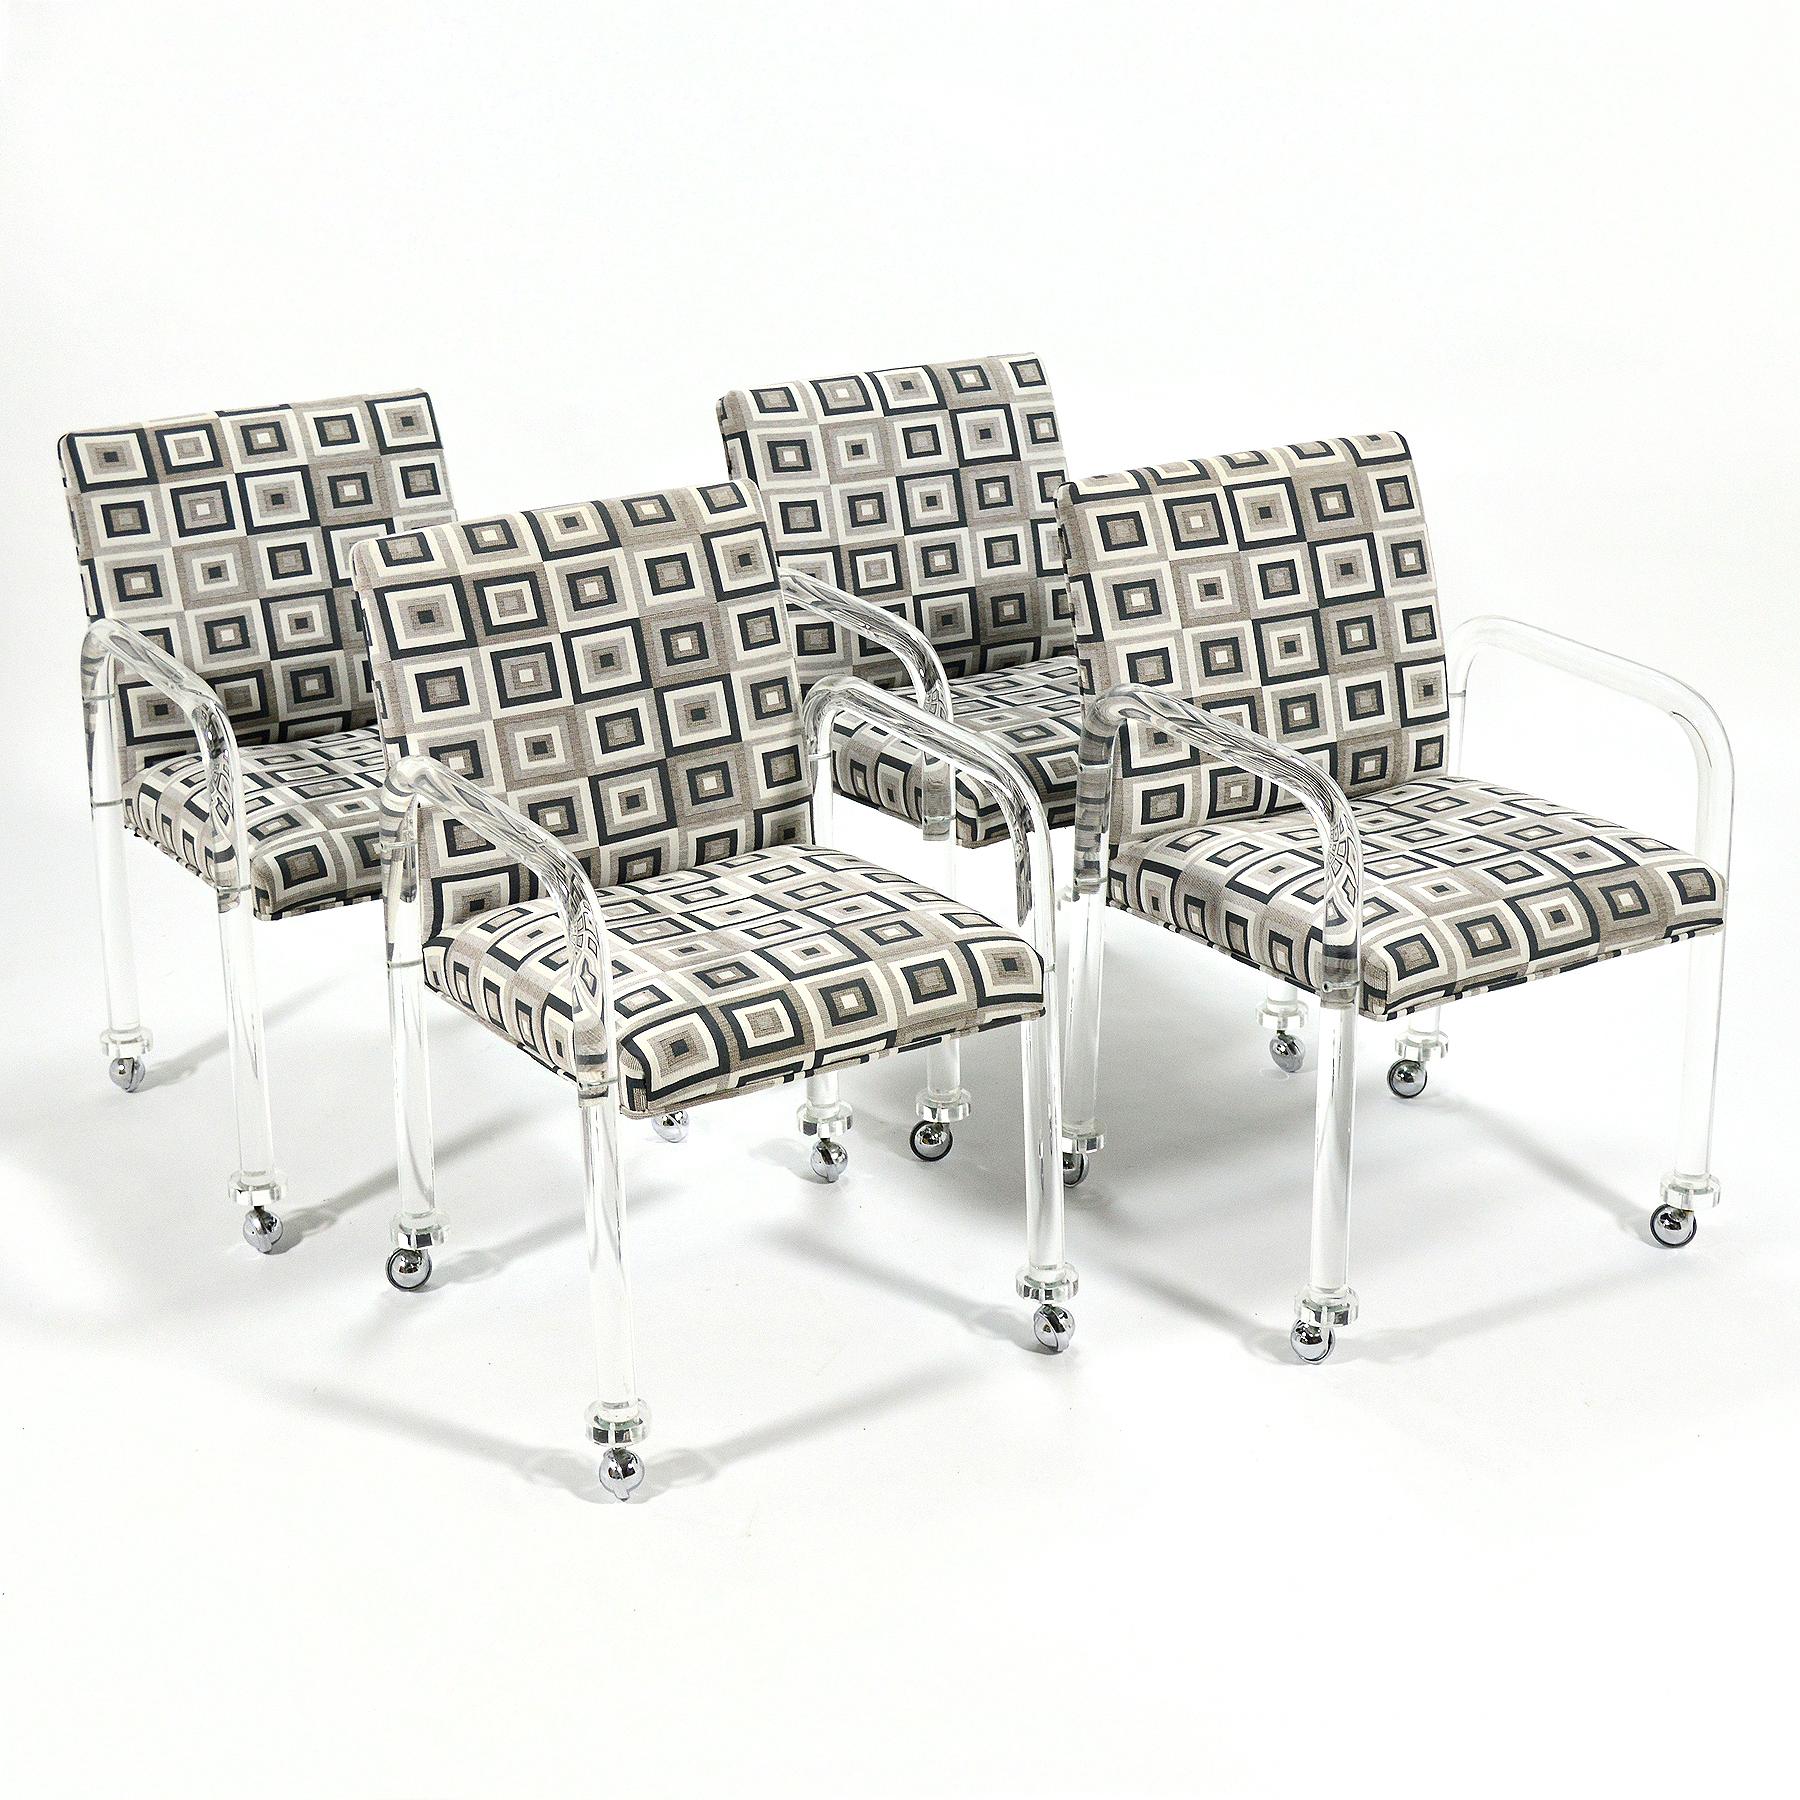 Diese hübschen Sessel haben röhrenförmige Arme/Beine aus Lucite, die die gepolsterte Sitzfläche/Rückenlehne mit einem lustigen geometrischen Muster tragen. Sie erinnern an die Arbeiten von Charles Hollis Jones oder die 